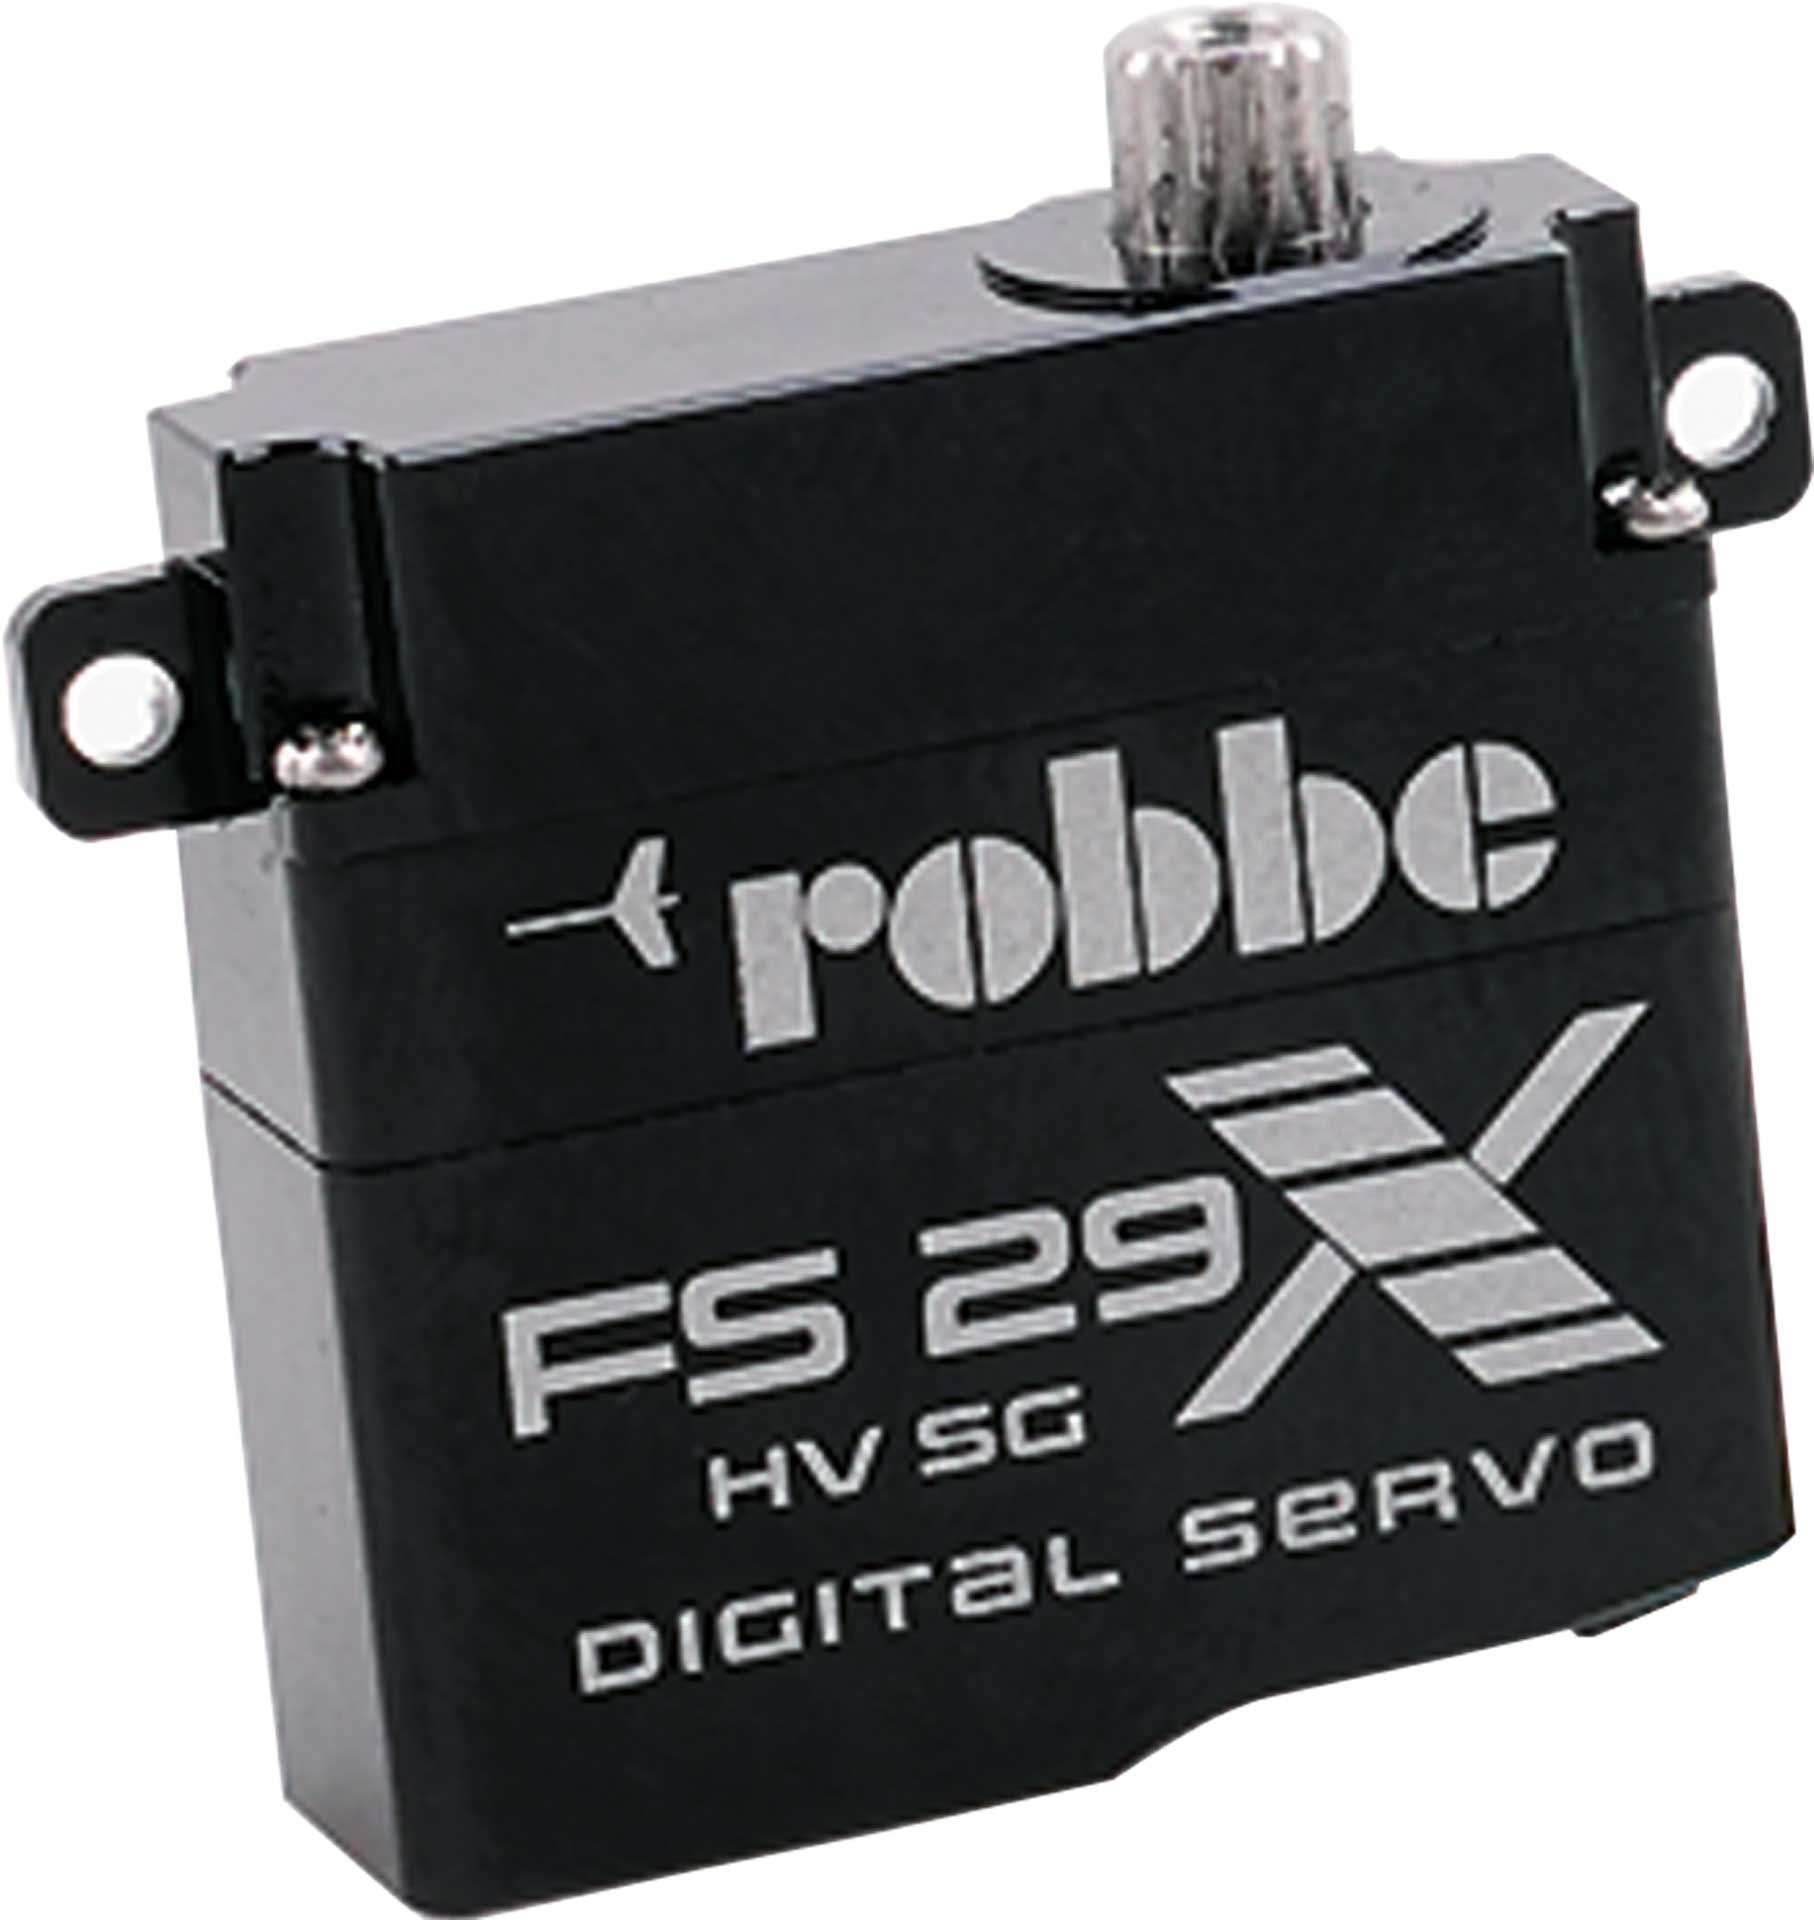 Robbe Modellsport FS 29 X HV SG Digital Servo Abmessungs-kompatibel zu KST X-08 mit Softstart